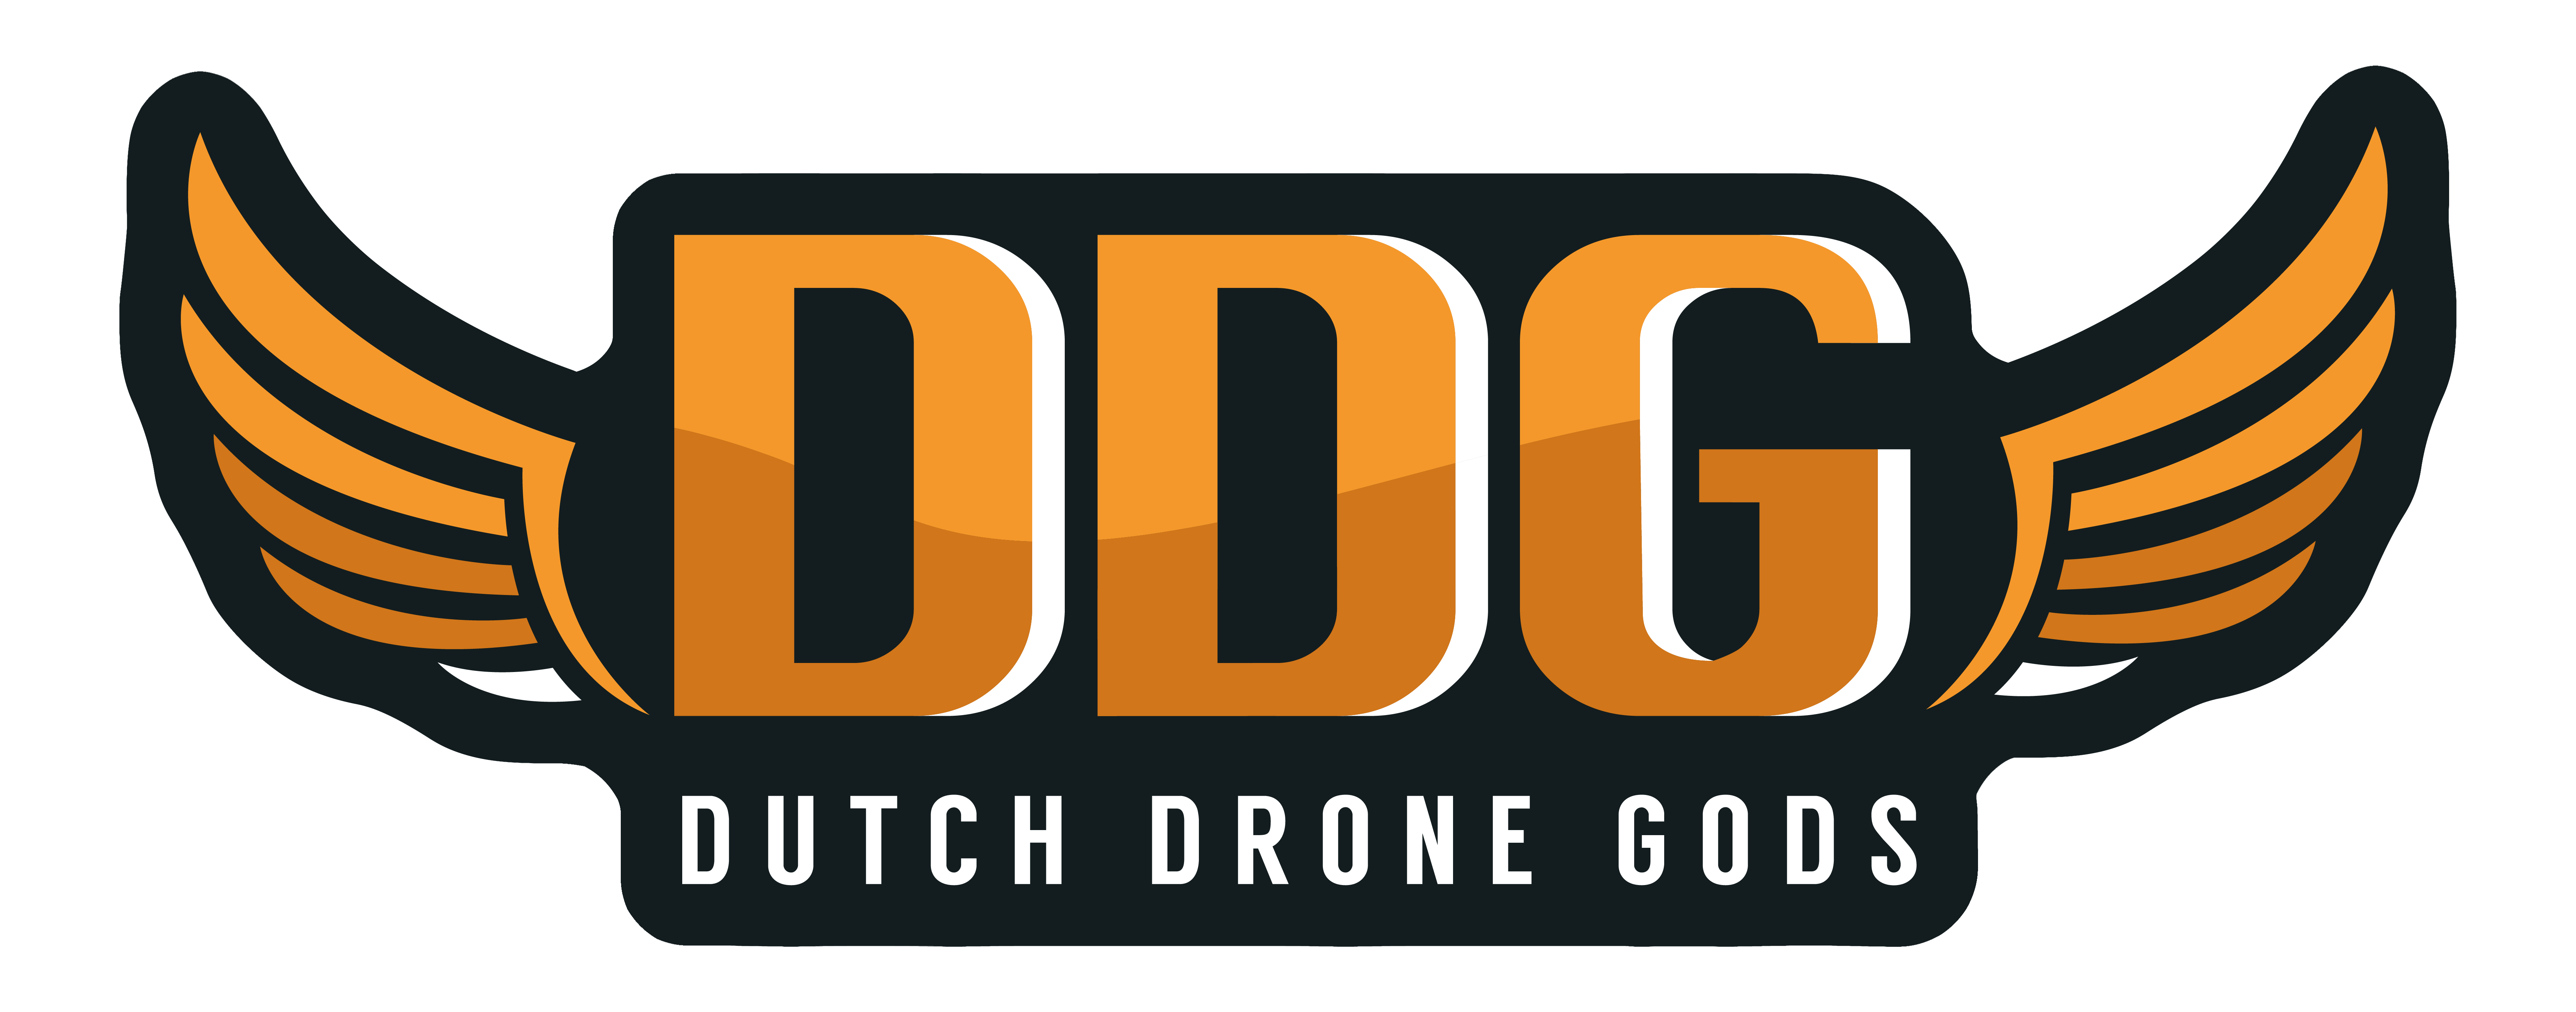 Dutch Drone Gods Logo